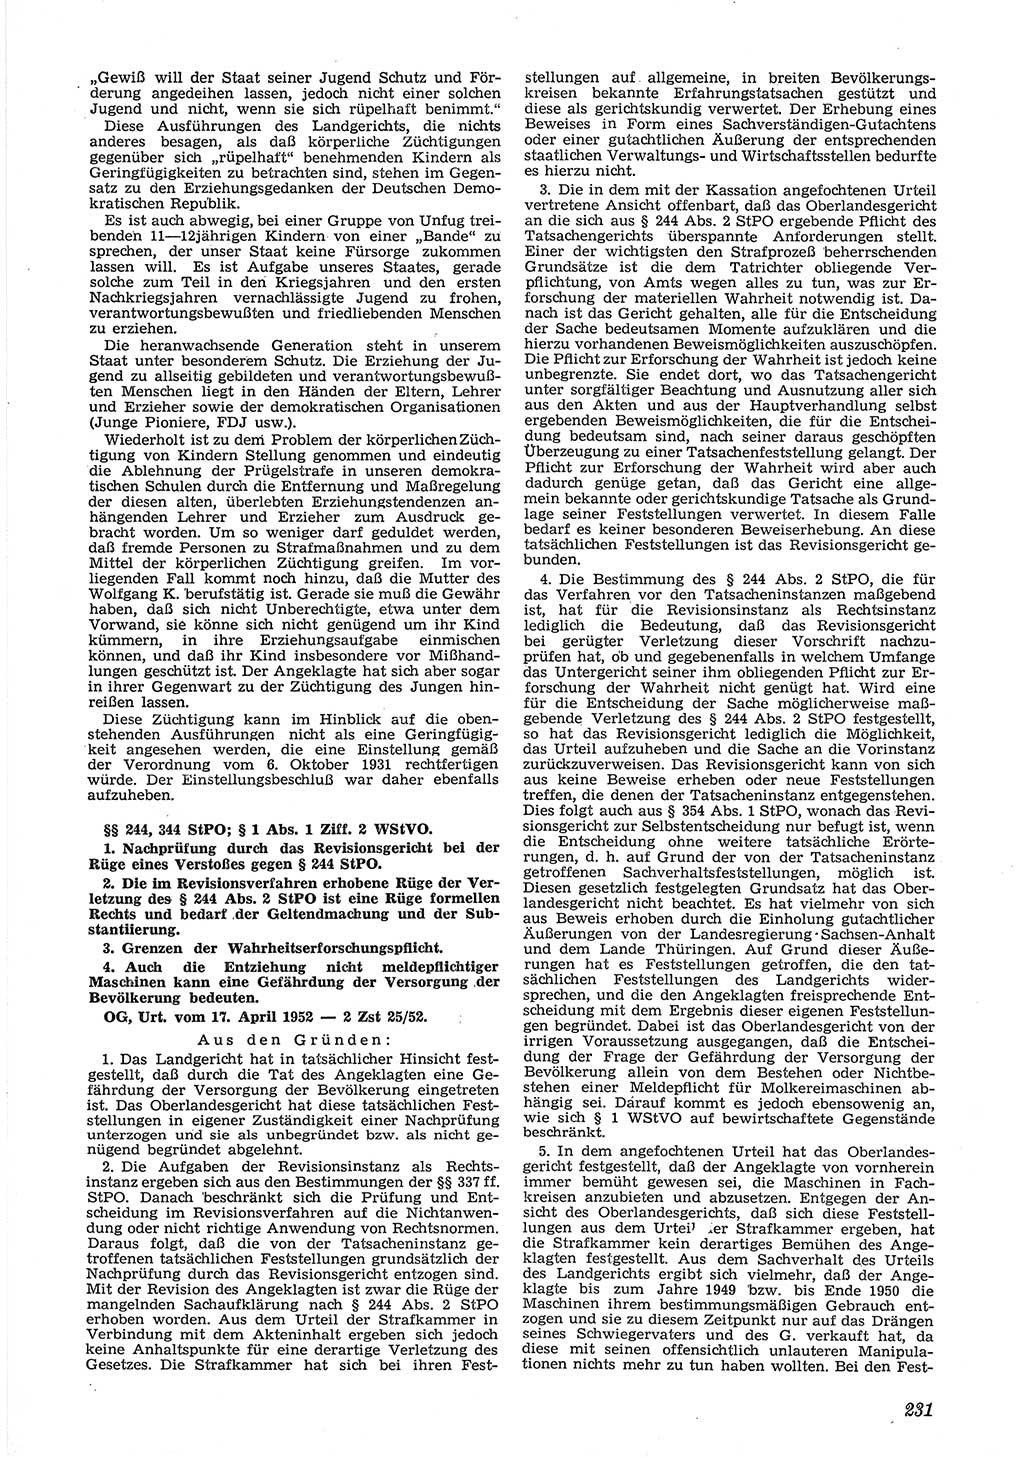 Neue Justiz (NJ), Zeitschrift für Recht und Rechtswissenschaft [Deutsche Demokratische Republik (DDR)], 6. Jahrgang 1952, Seite 231 (NJ DDR 1952, S. 231)